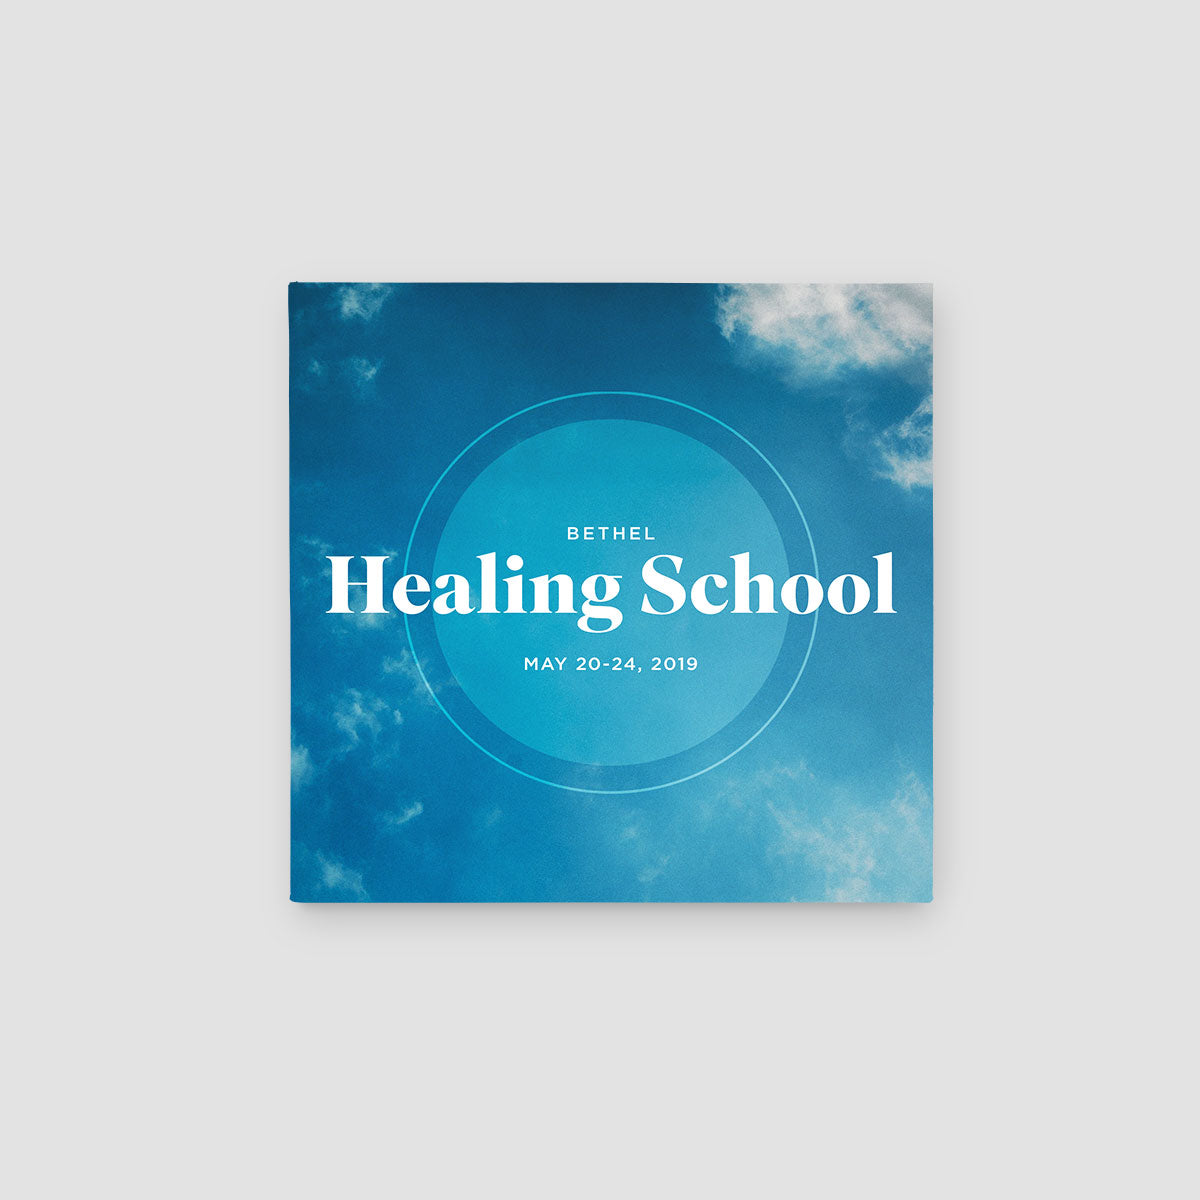 Bethel Healing School 2019